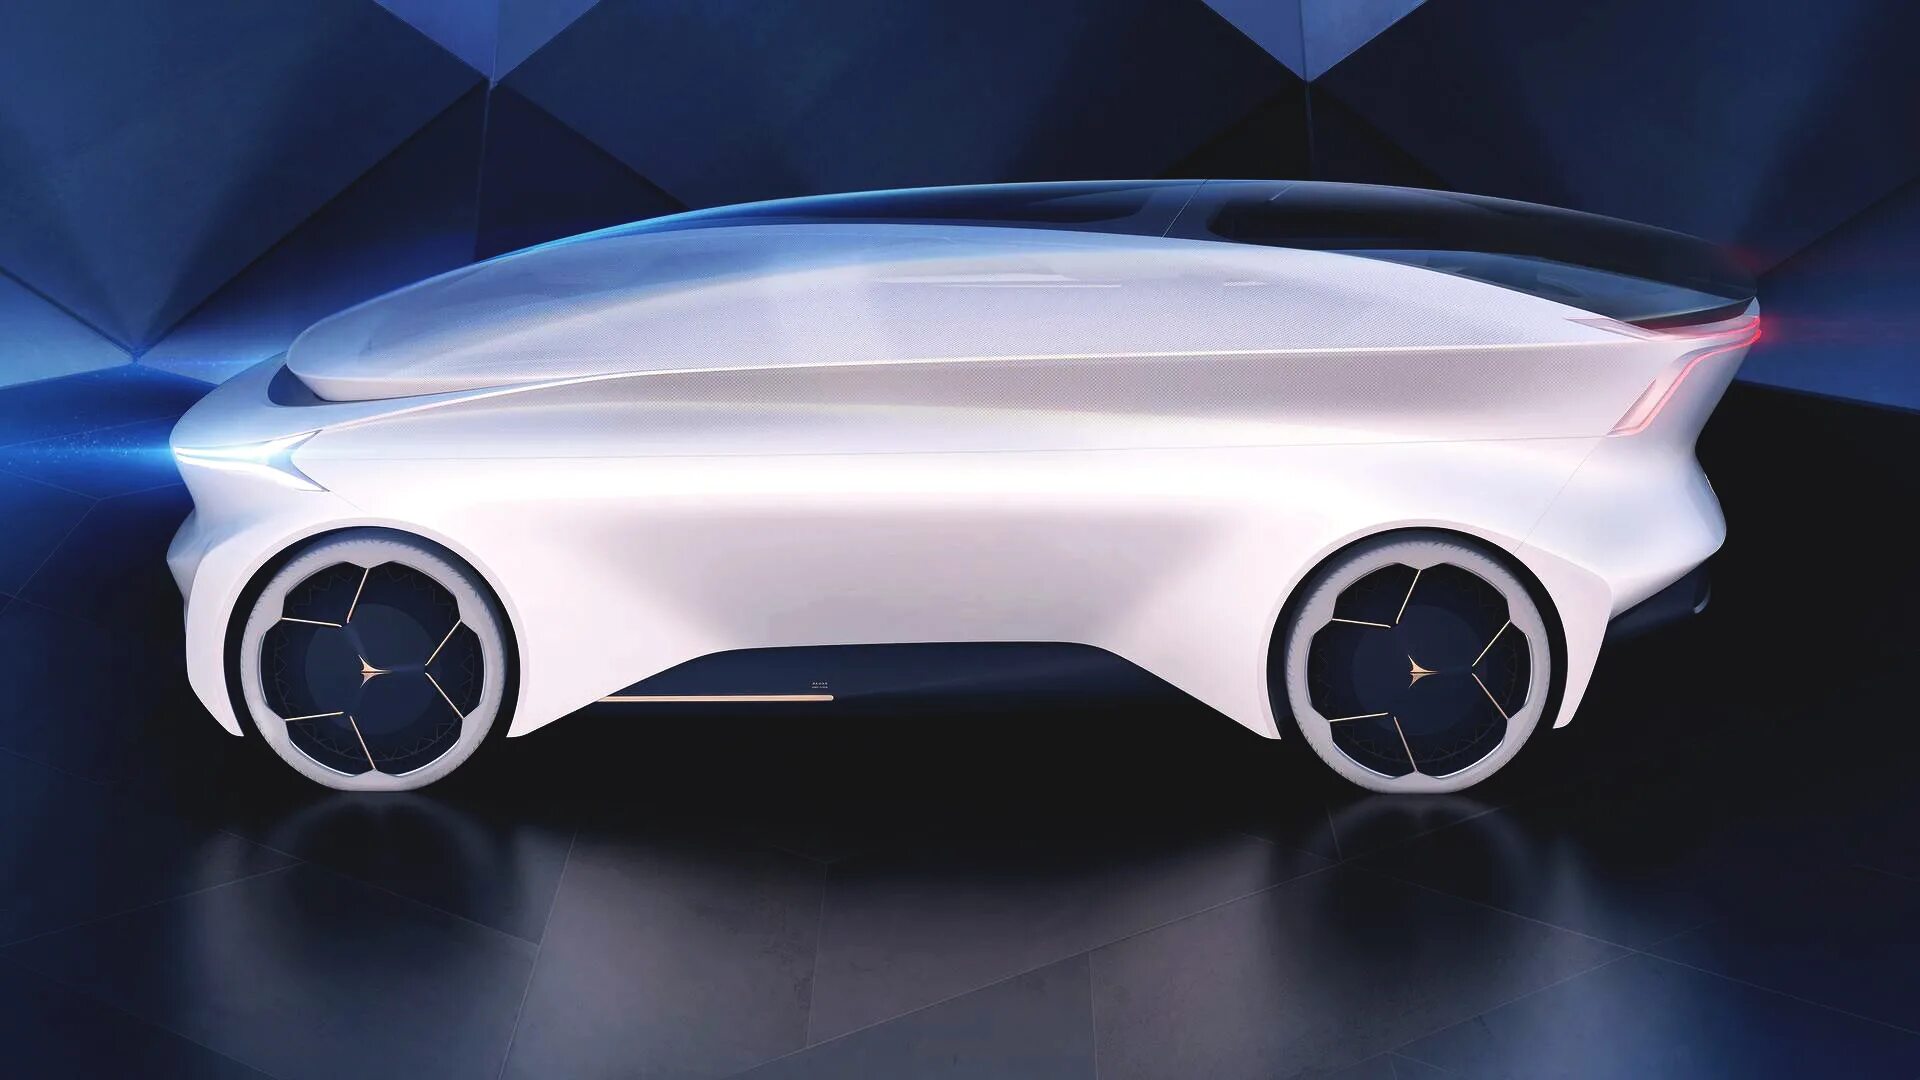 Полностью автономный. Автономные машины. Полностью автономный автомобиль. Icona Nucleus. Кит кар концепт будущего.